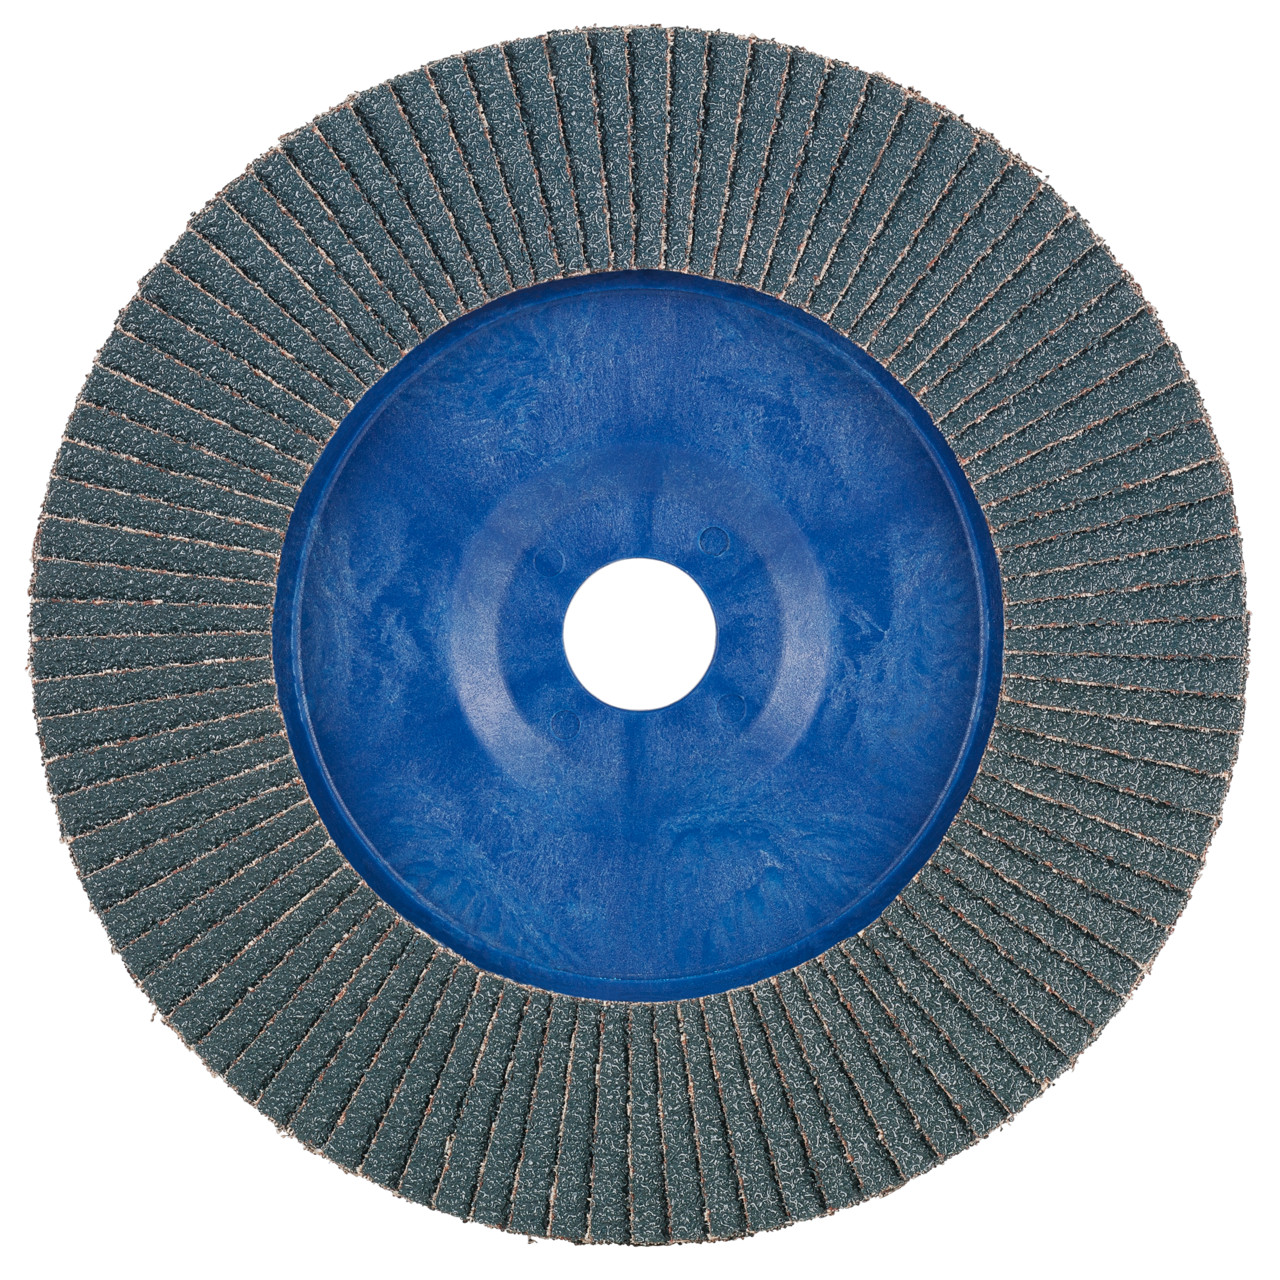 Tyrolit Rondelle éventail DxH 125x22,2 2en1 pour l'acier et l'inox, P60, forme : 28N - version droite (corps de support en plastique), art. 847925